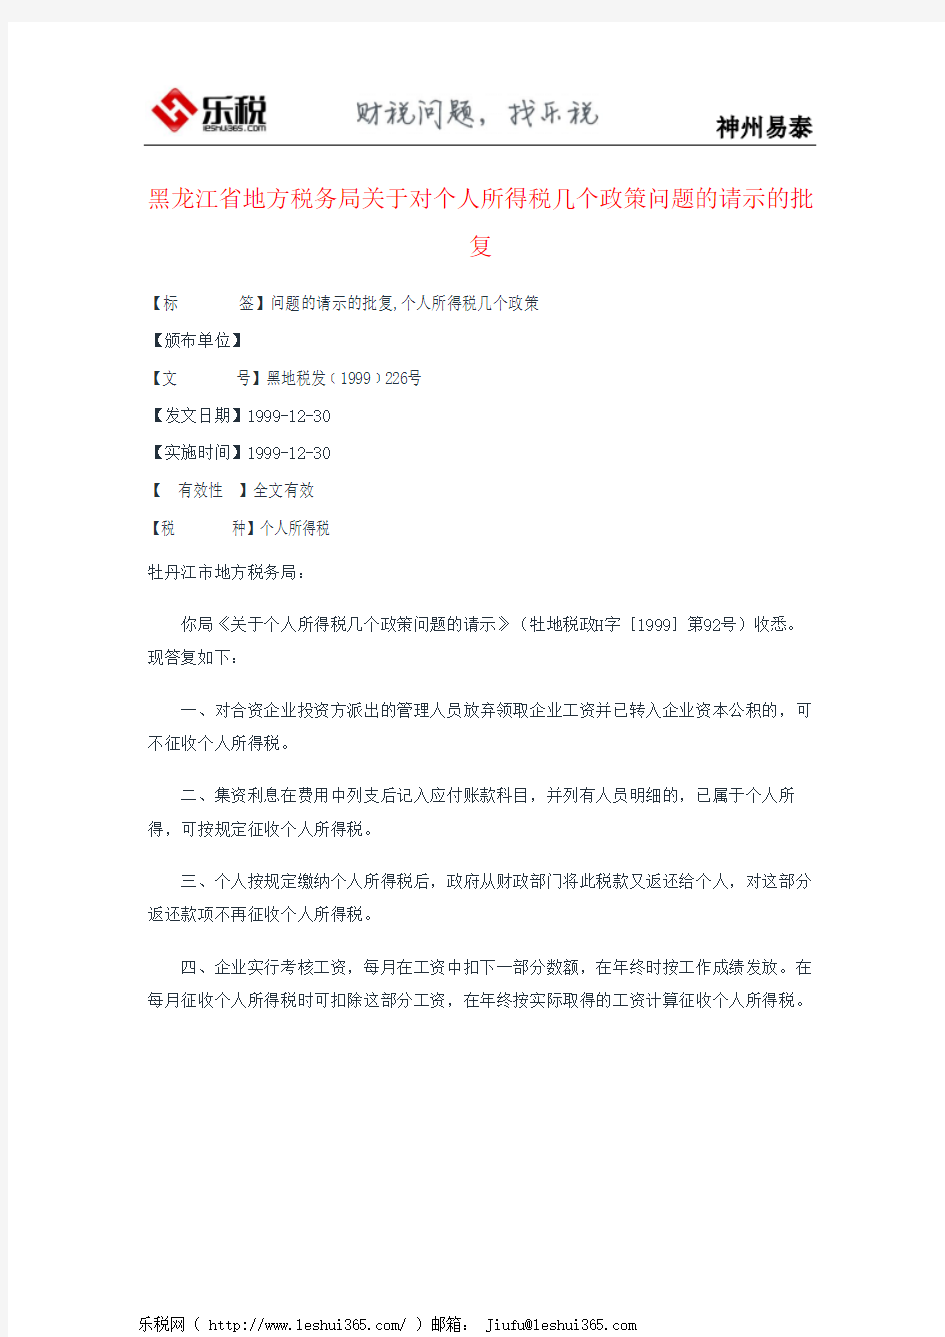 黑龙江省地方税务局关于对个人所得税几个政策问题的请示的批复